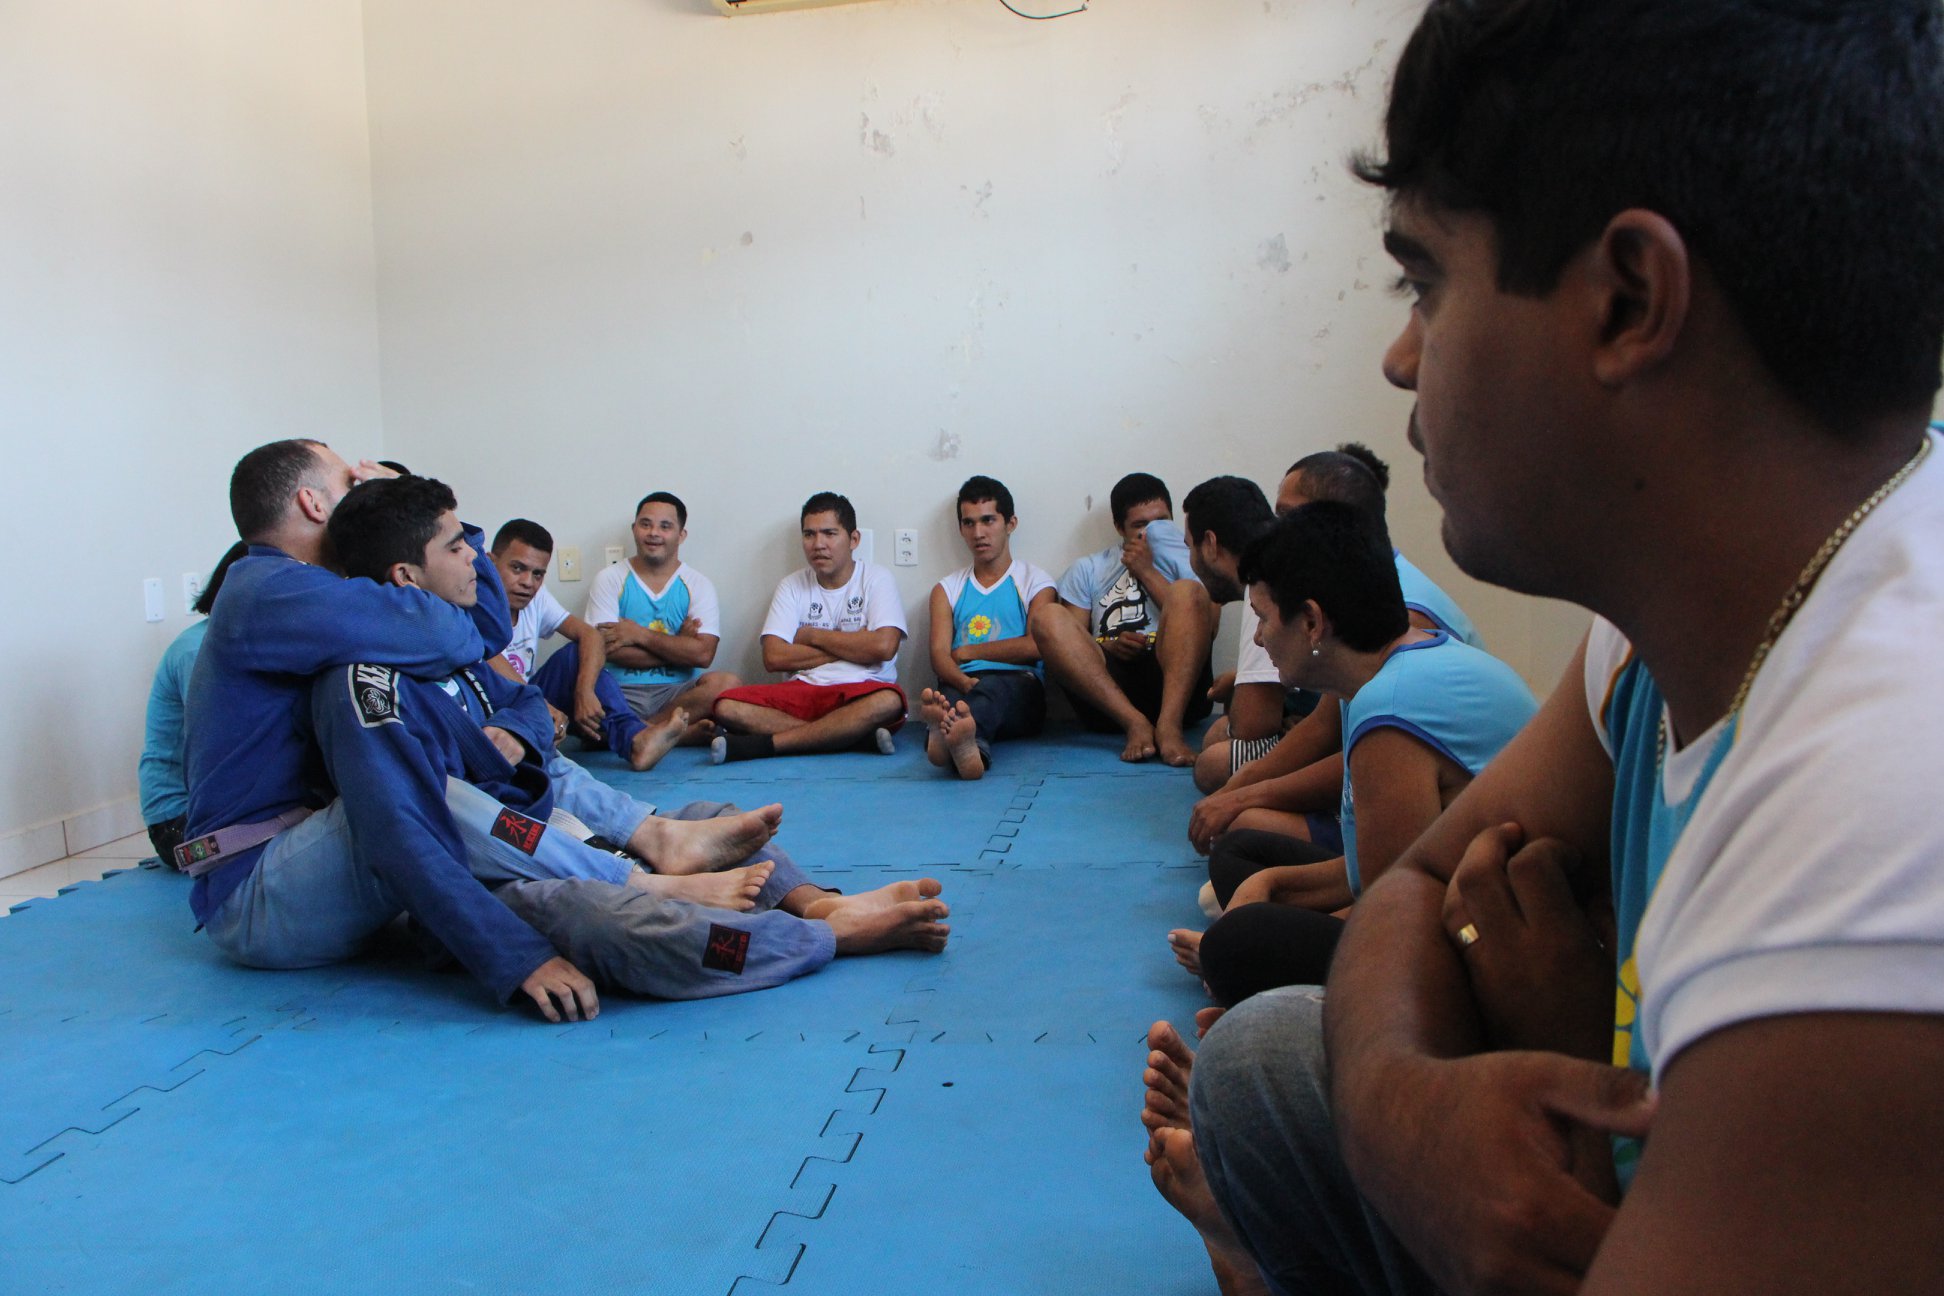 Polícia Militar promove inclusão social com aulas de jiu-jitsu aos alunos da Apae